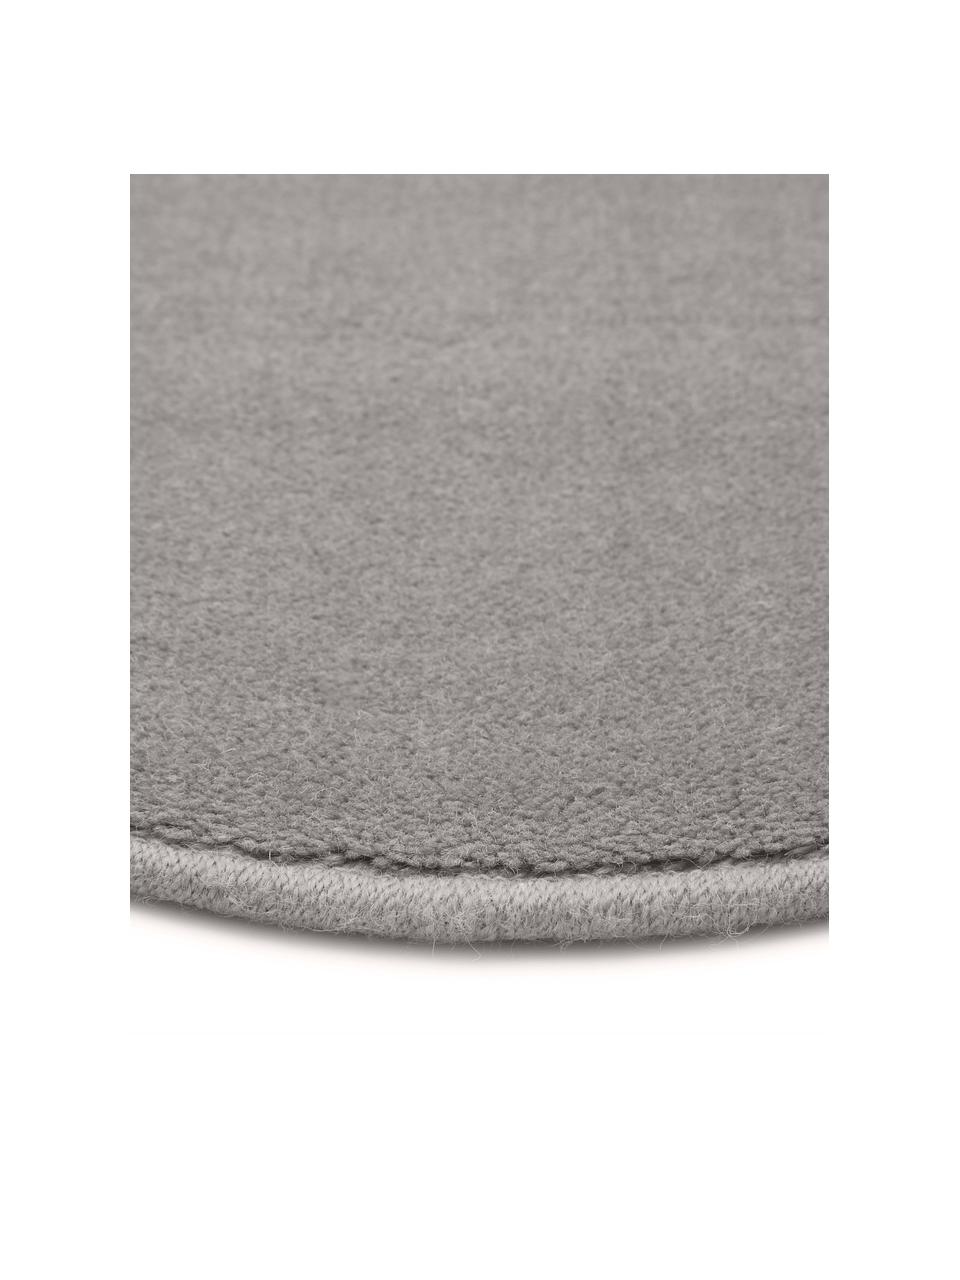 Rond wollen vloerkleed Ida in grijs, Bovenzijde: 100% wol, Onderzijde: 60% jute, 40% polyester B, Grijs, Ø 200 cm (maat L)